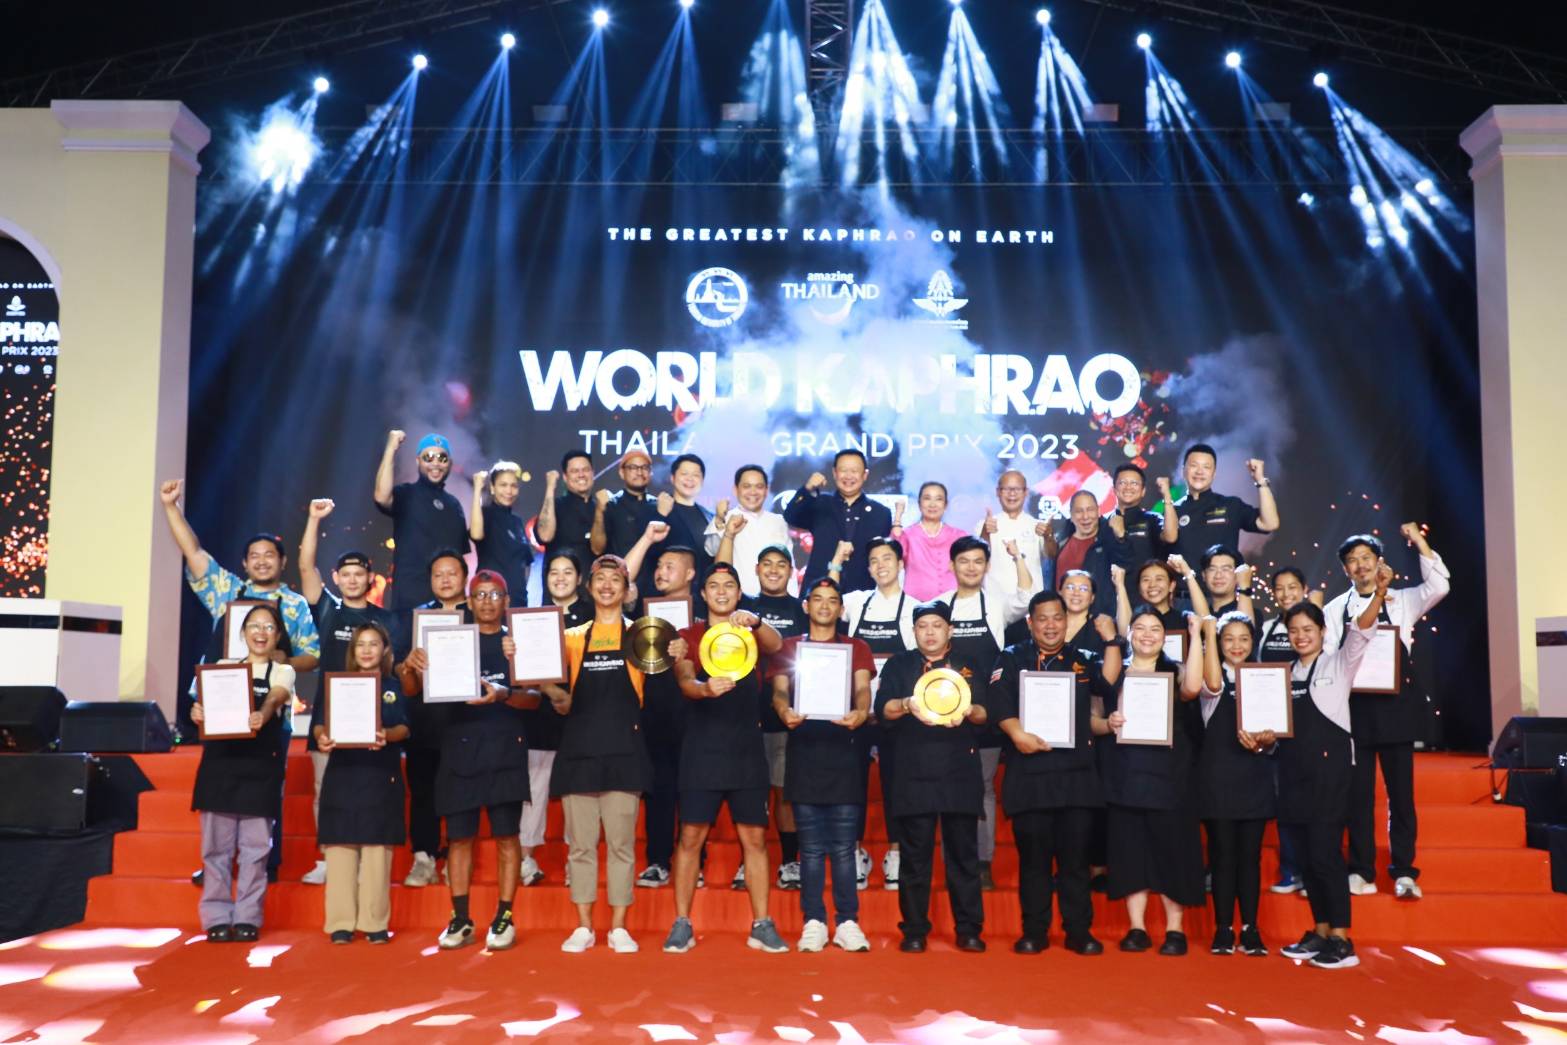 “ครัวเนื้อหอม” จ. ลำปาง สุดเจ๋ง คว้าแชมป์ผัดกะเพราชิงแชมป์ประเทศไทยในรายการ “World Kaphrao Thailand Grand Prix 2023”